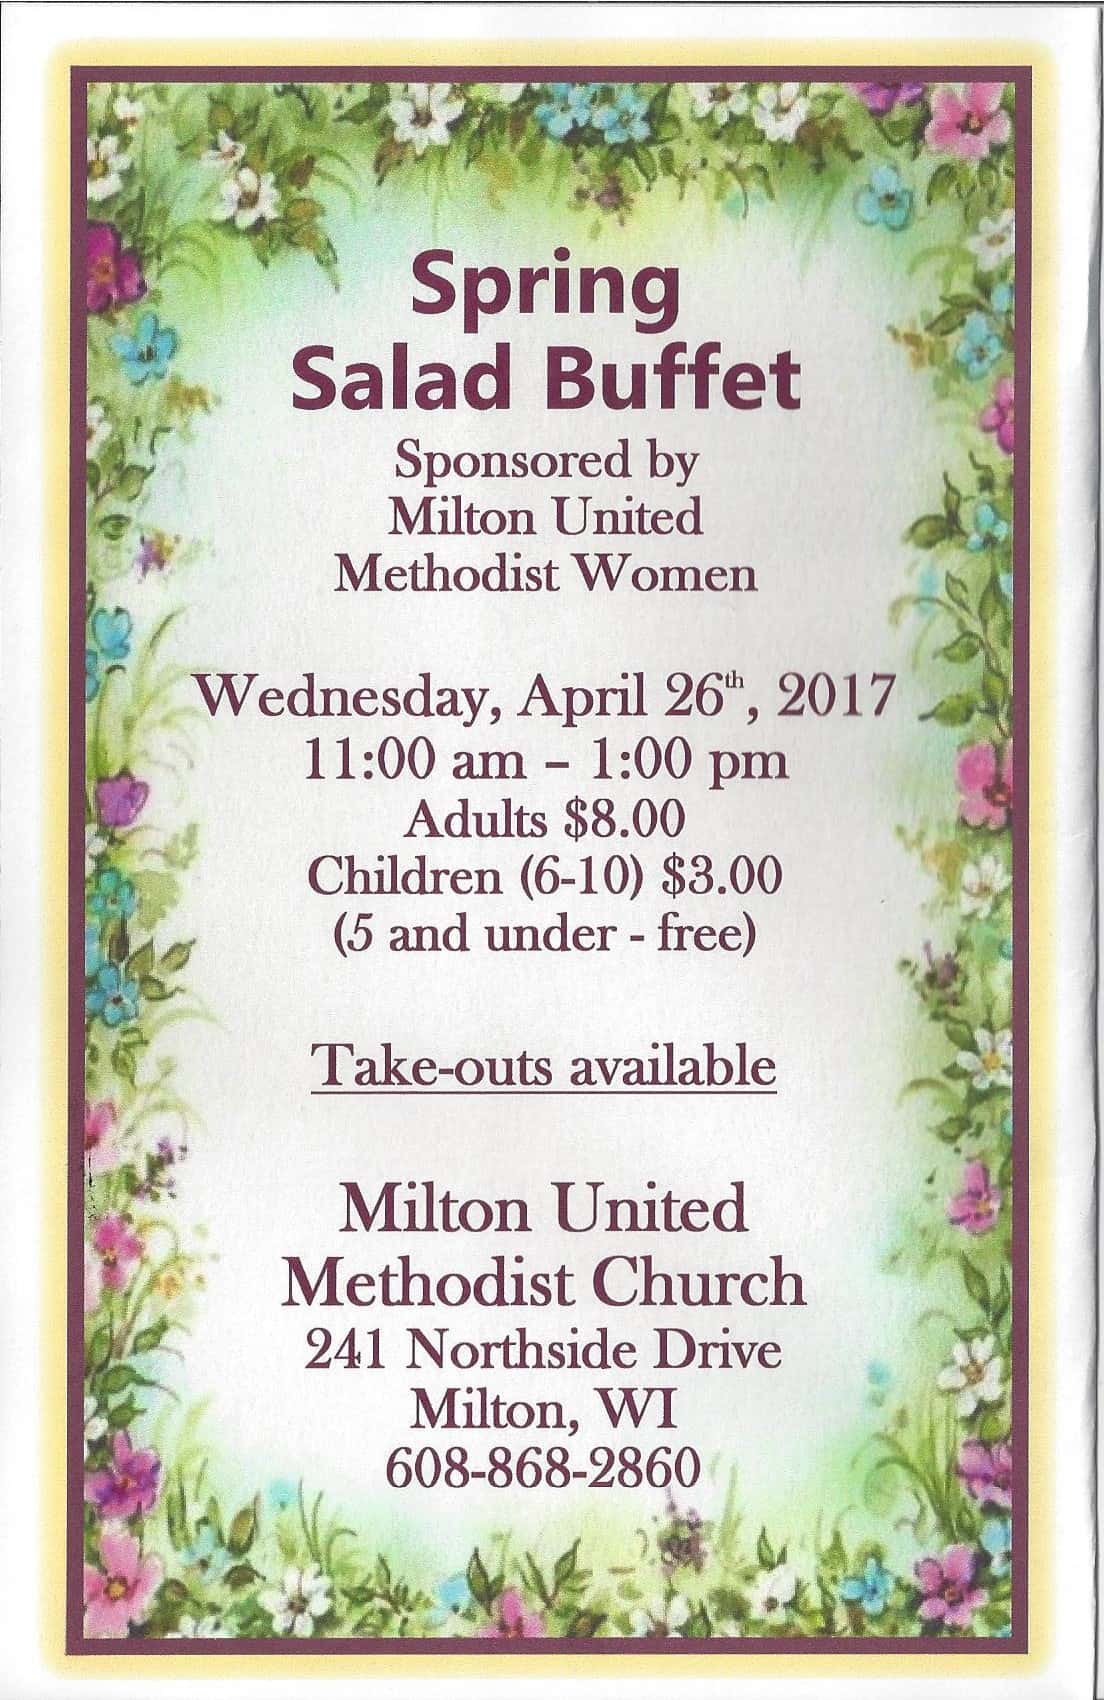 umw-salad-buffet-2017-flyer-2